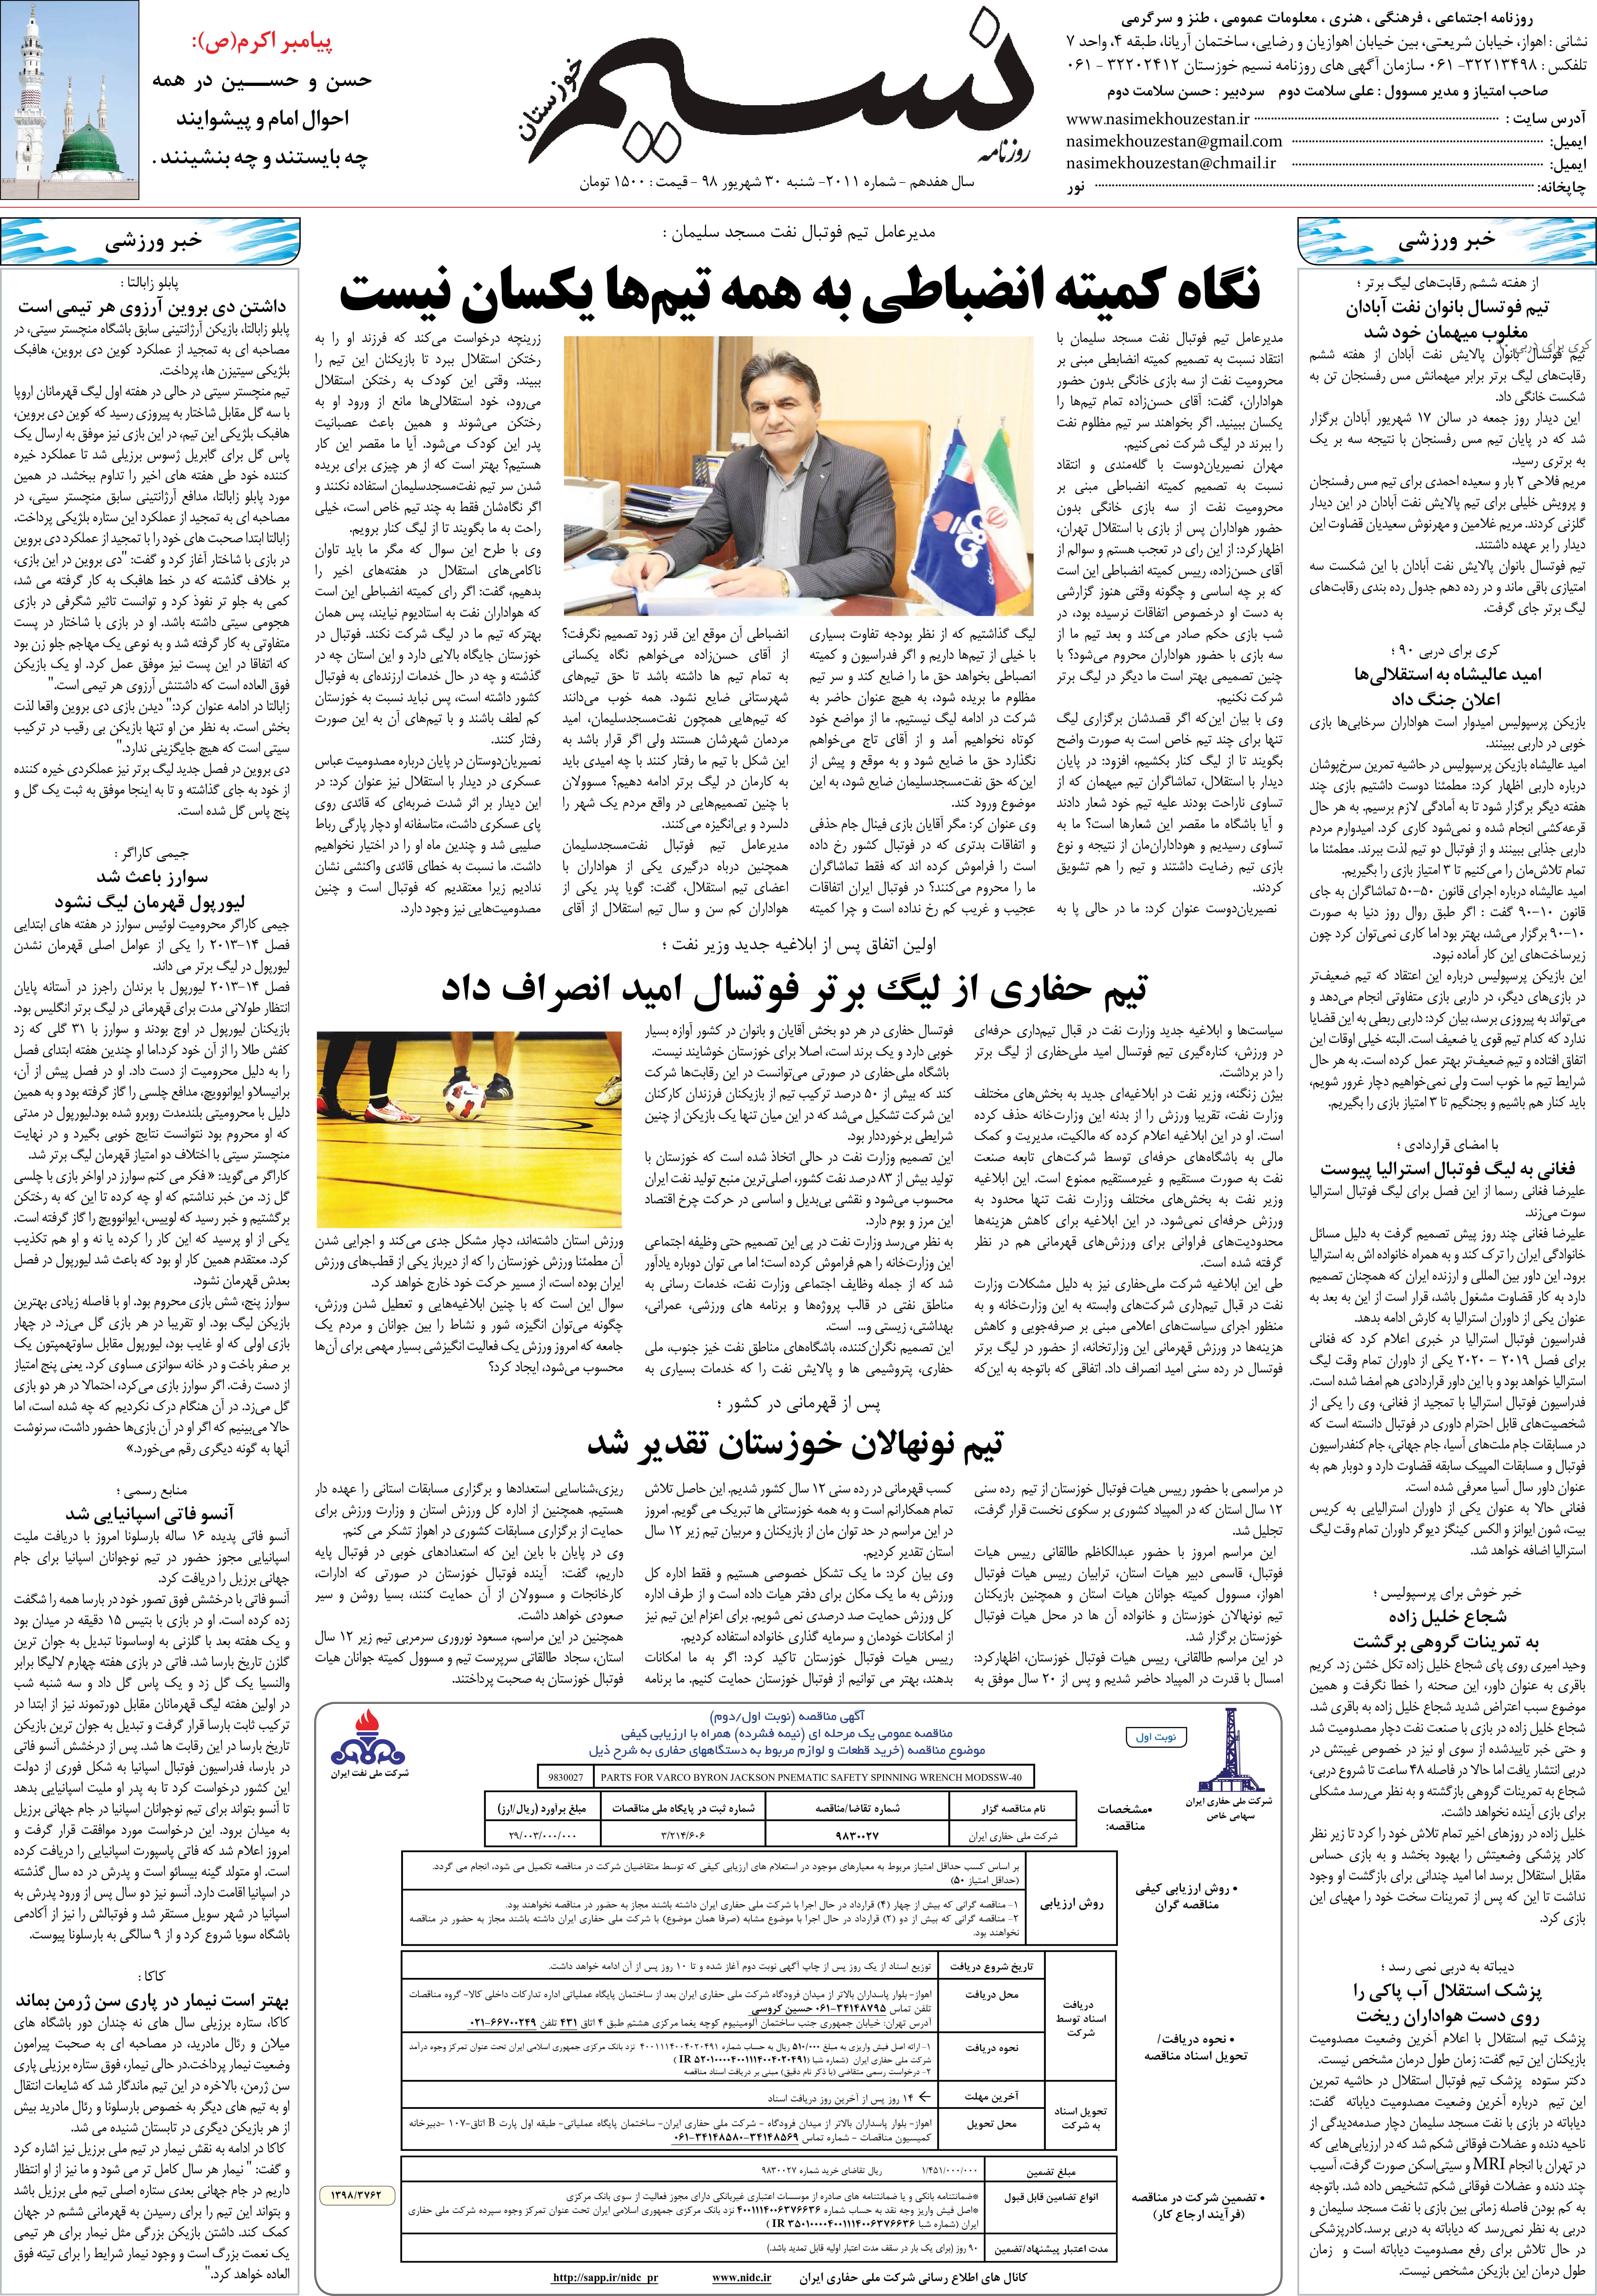 صفحه آخر روزنامه نسیم شماره 2011